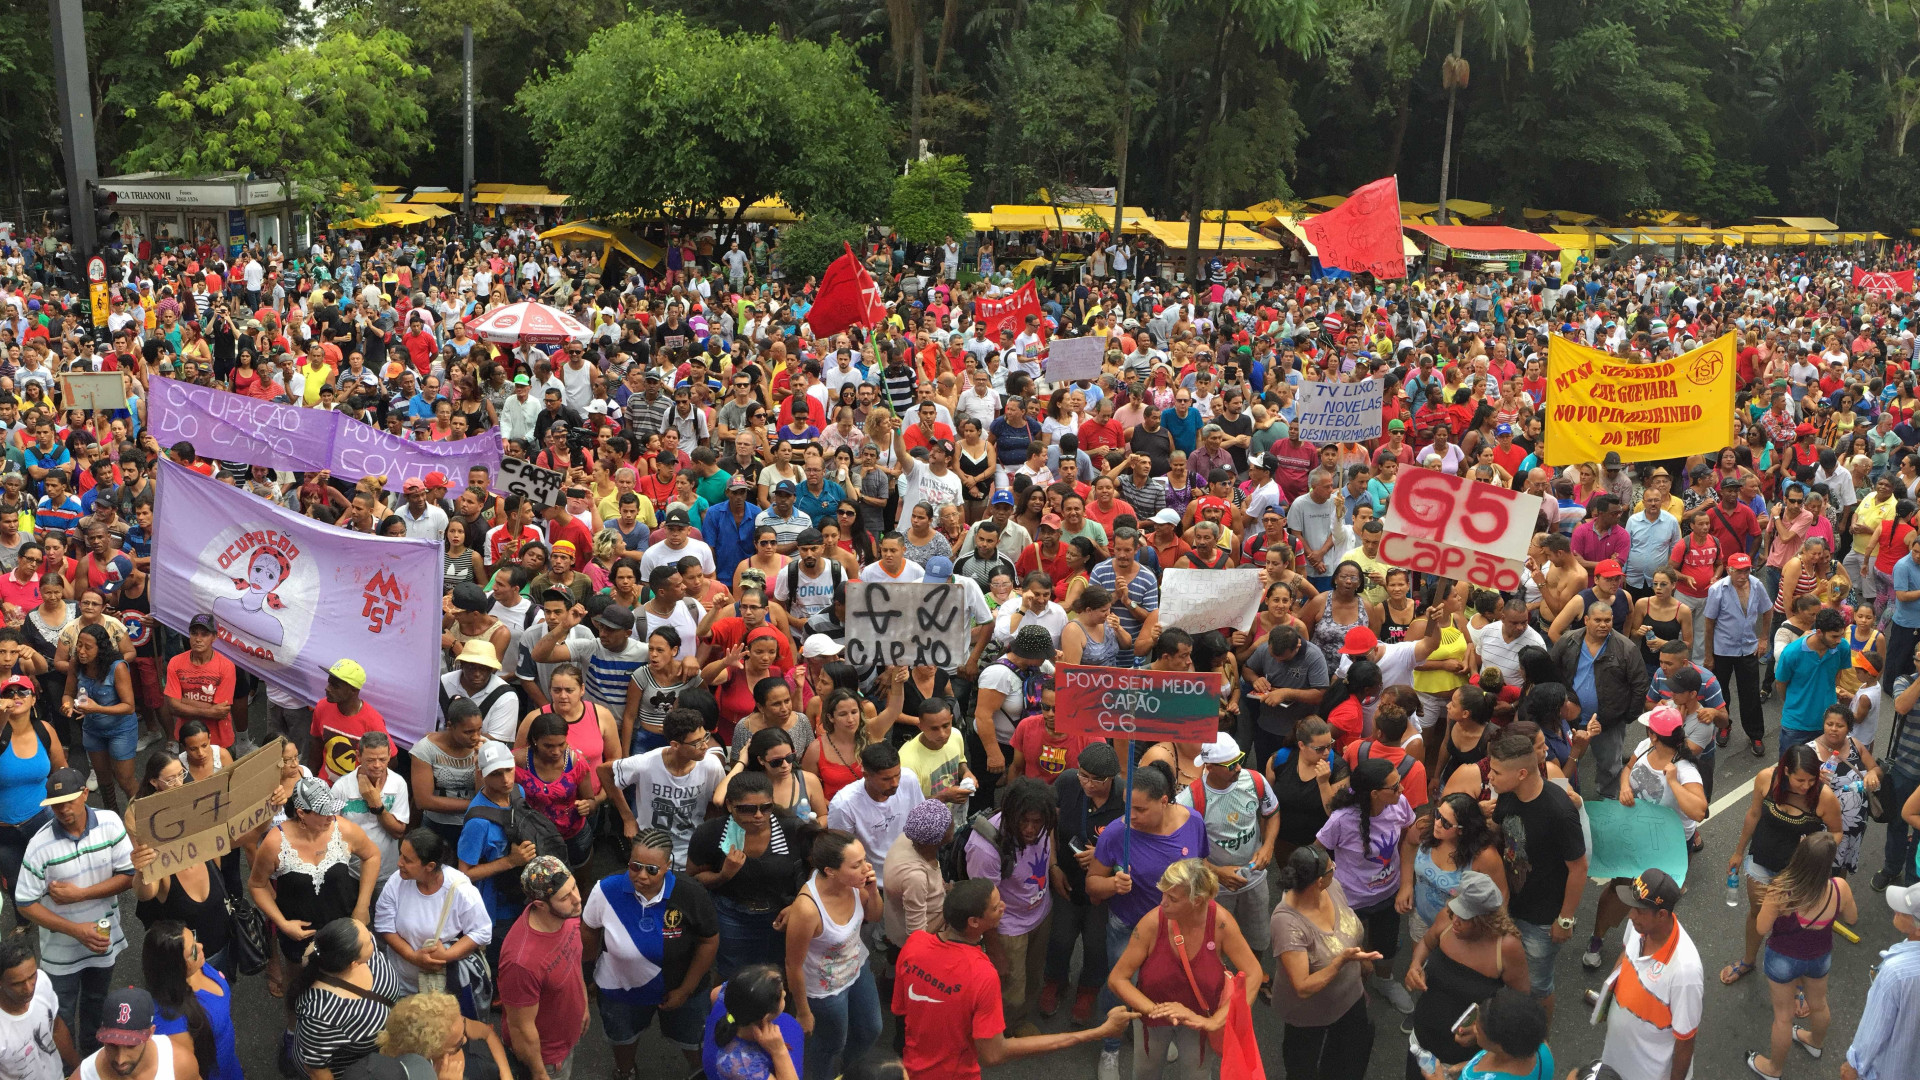 Ato contra PEC do teto e anistia do 
caixa 2 reúne multidão na Paulista